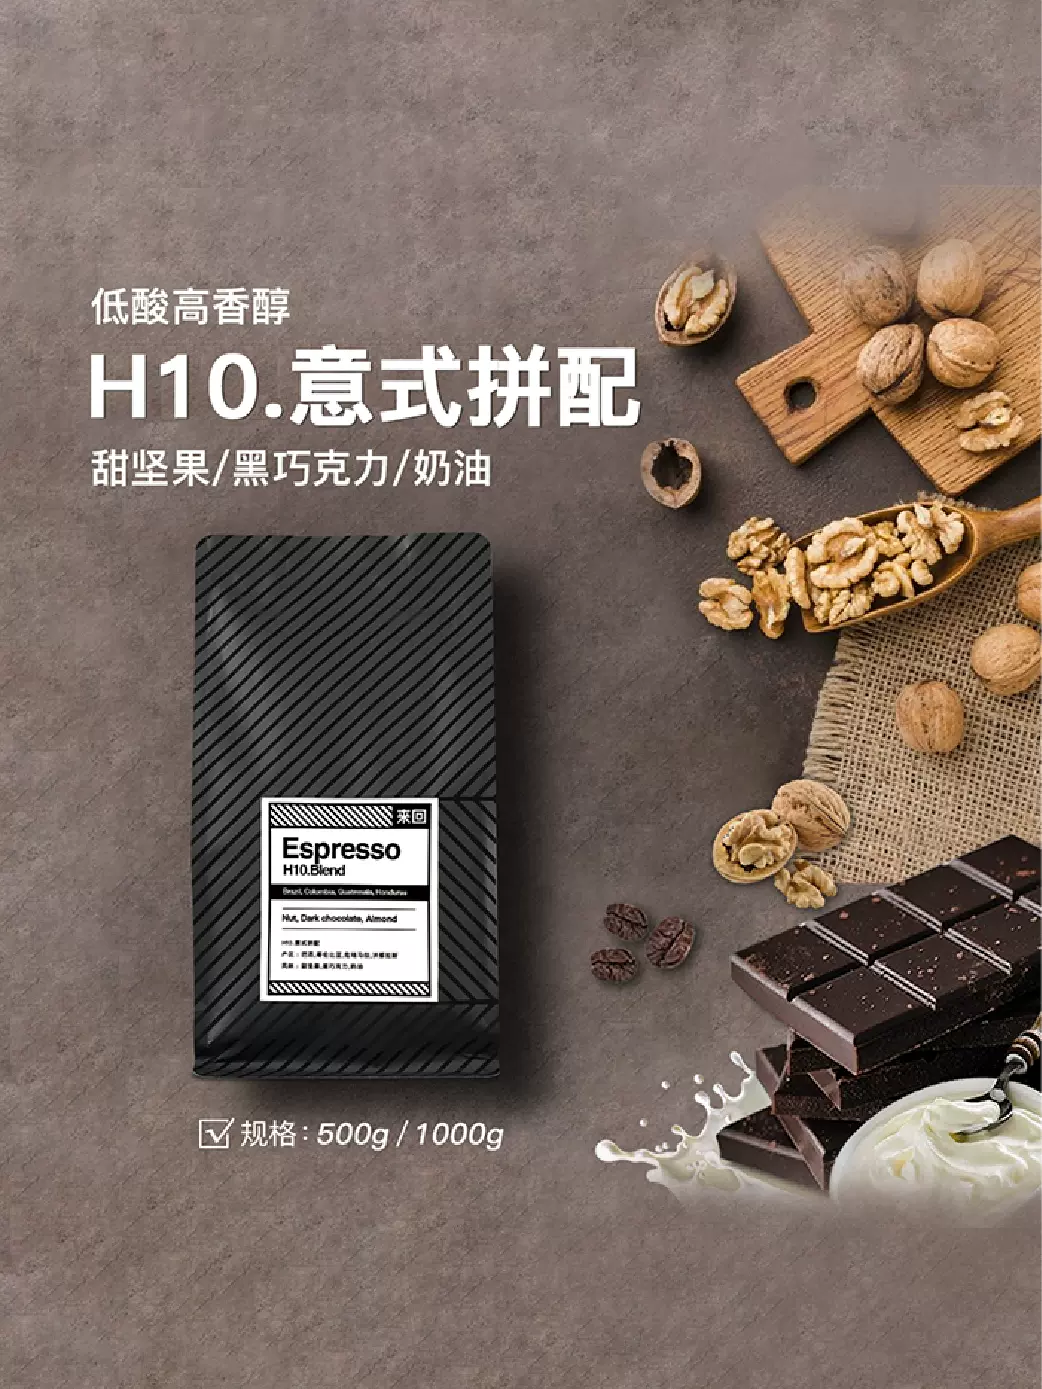 来回咖啡 H10 阿拉比卡低酸高甜拼配意式咖啡豆 200g 29.9包邮（￥39.9-10）可代磨粉